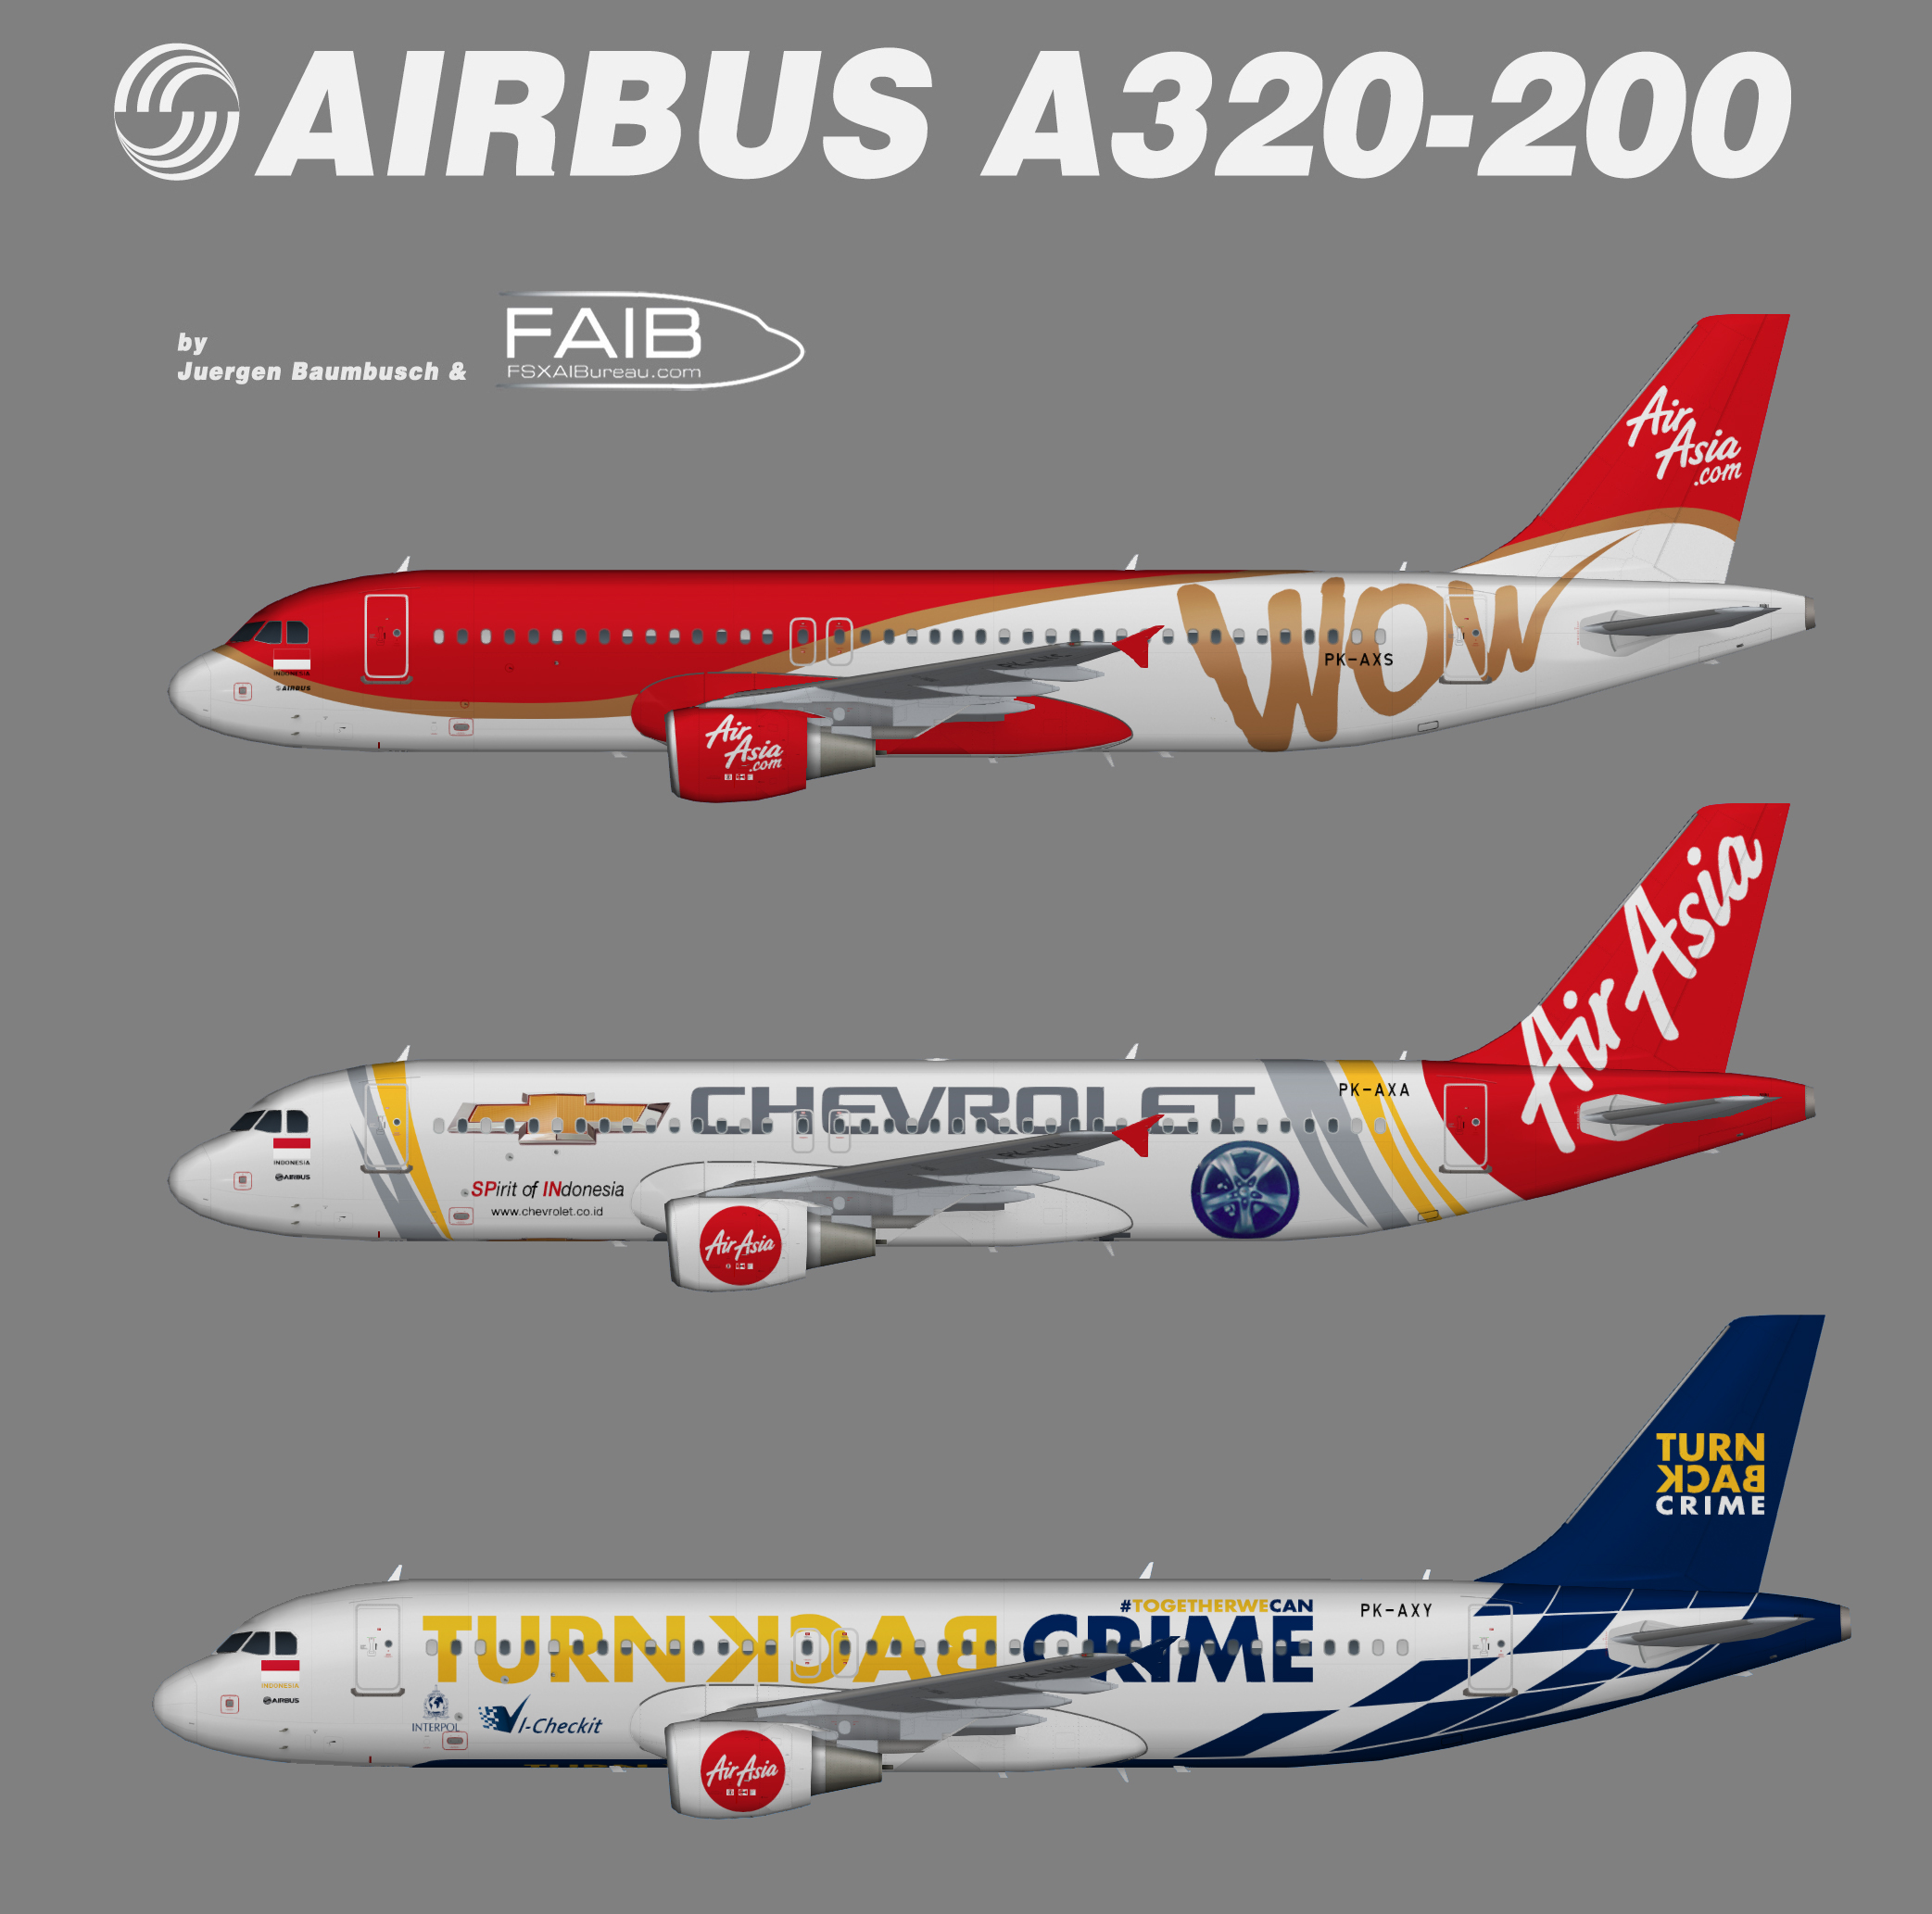 Indonesia AirAsia Airbus A320-200 Specials